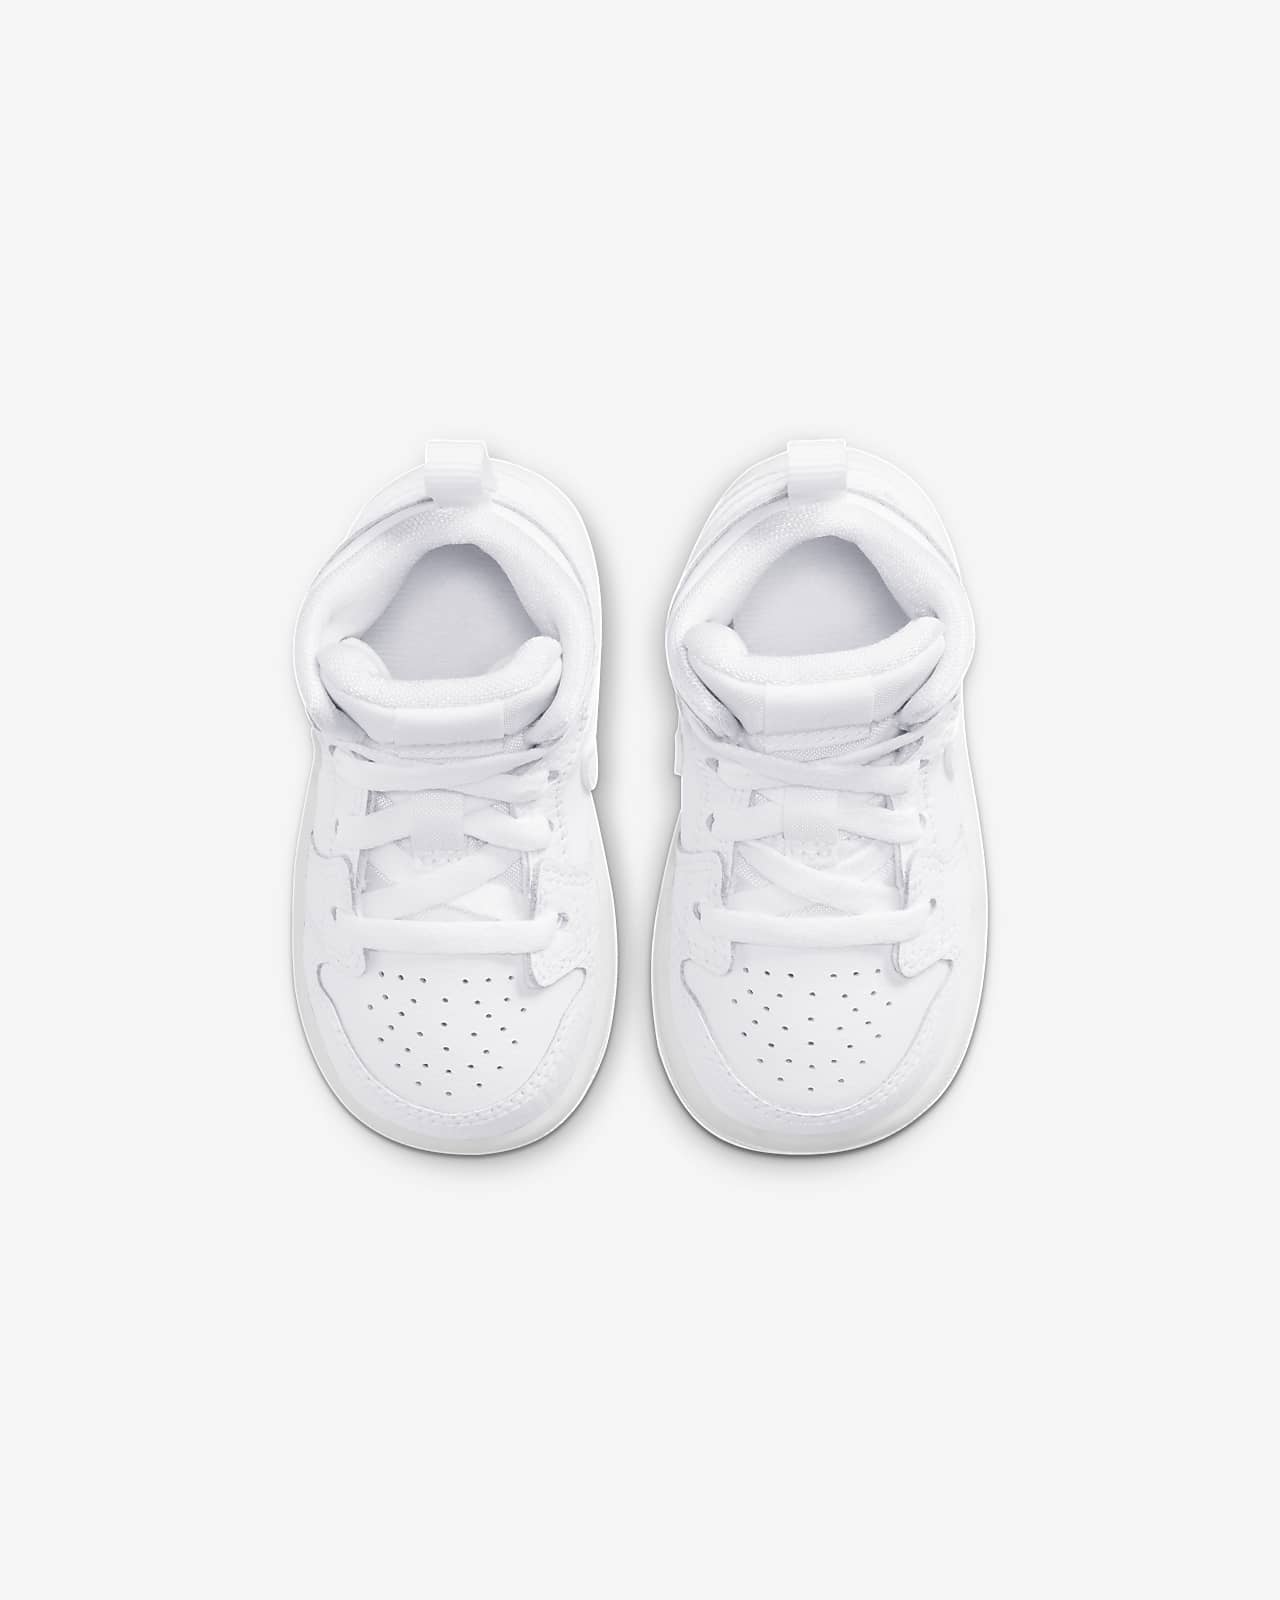 jordan 1 infant shoes